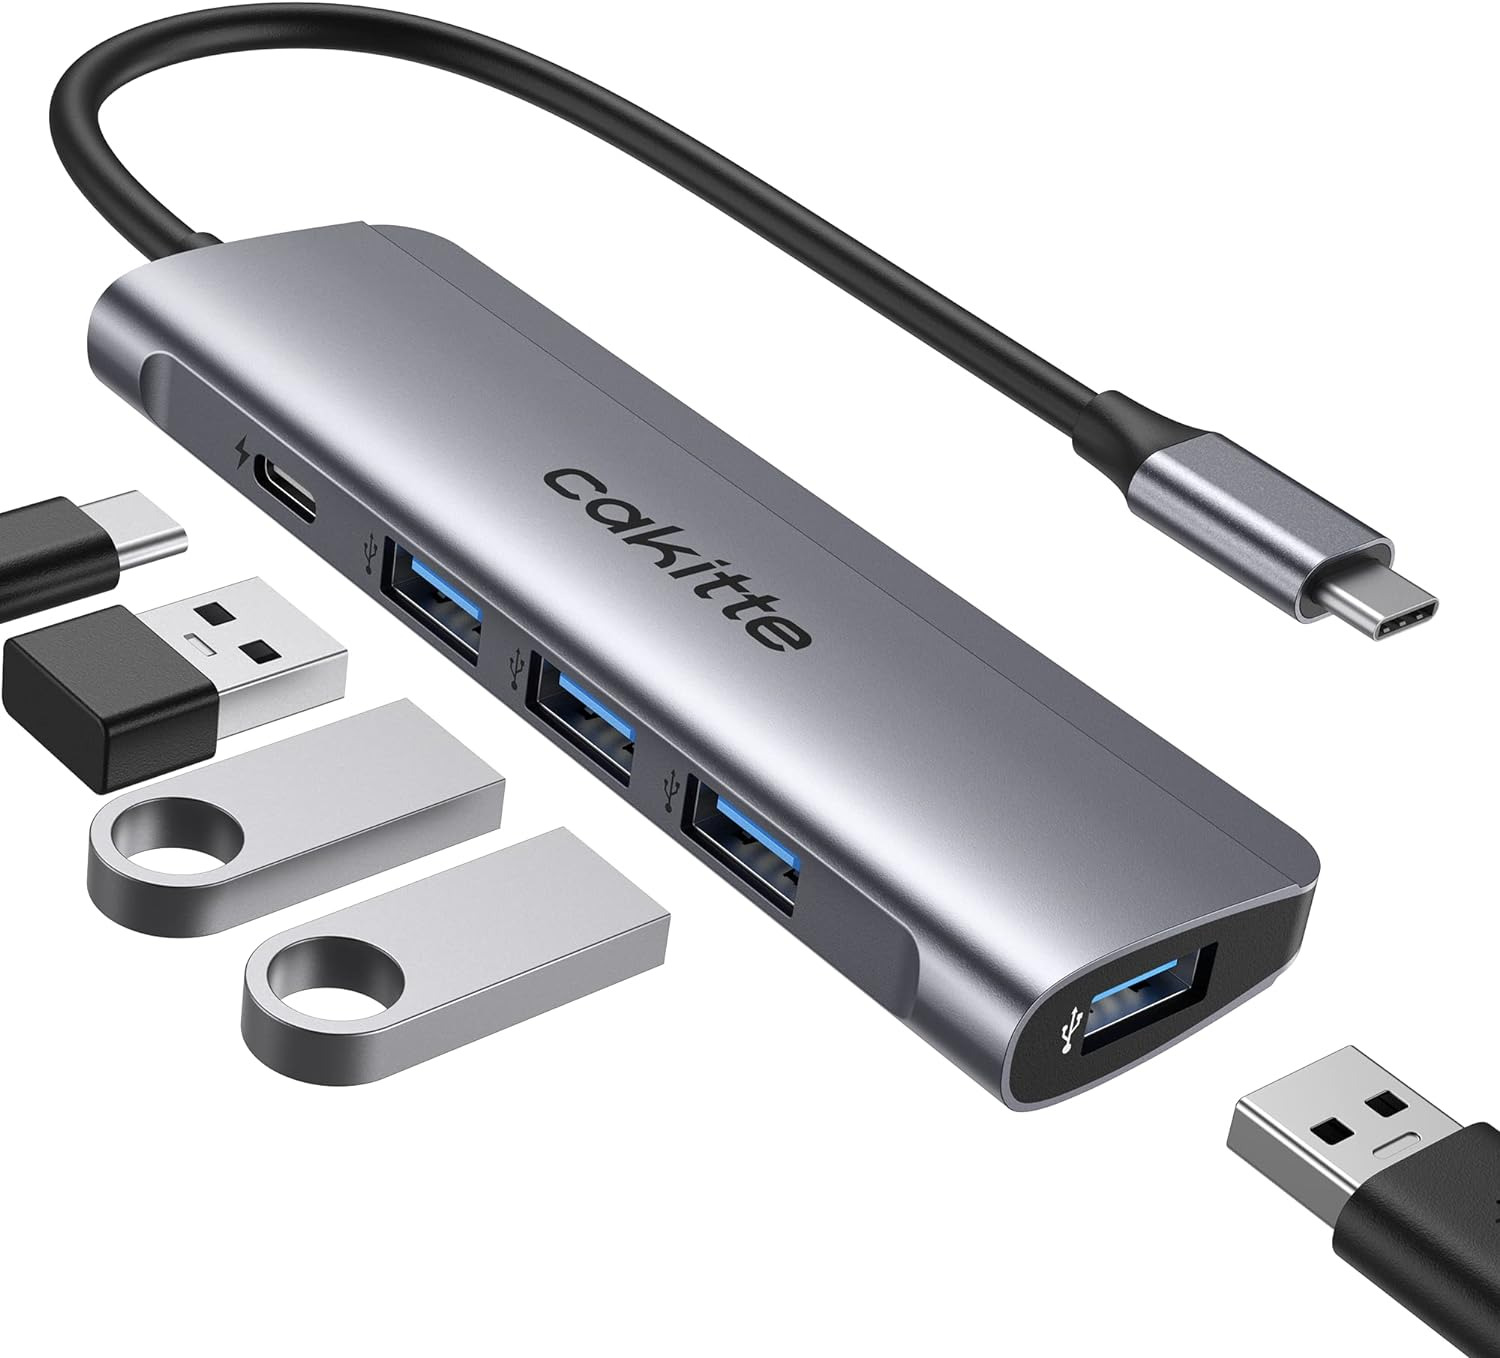 USB C to USB 3.0 Hub, Aluminum Type C to USB Hub with 4 USB 3.0 Ports & USB C Po